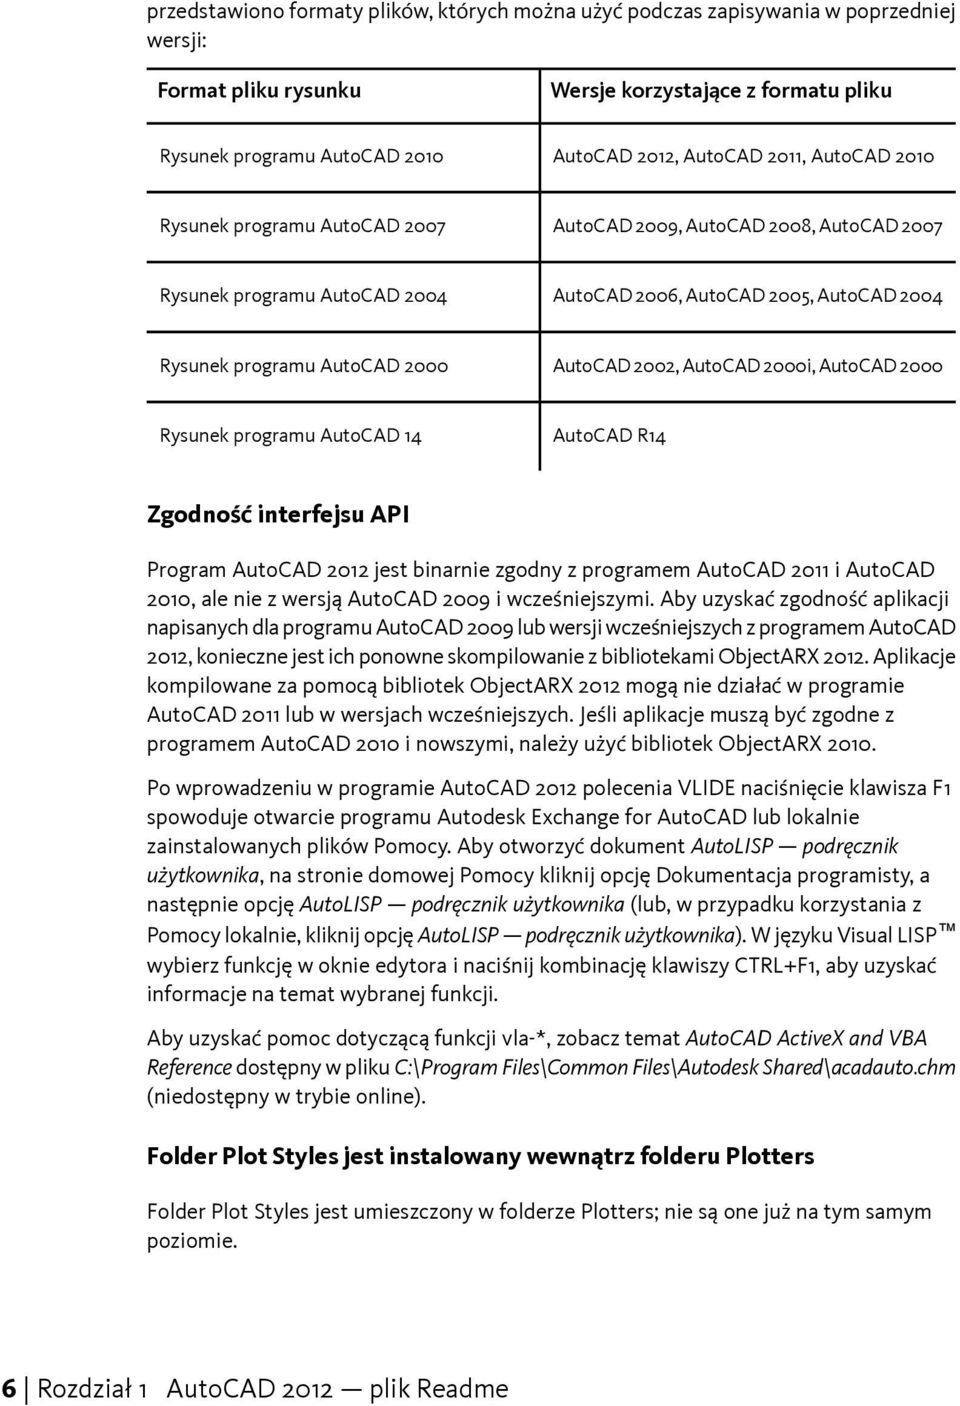 2002, AutoCAD 2000i, AutoCAD 2000 Rysunek programu AutoCAD 14 AutoCAD R14 Zgodność interfejsu API Program AutoCAD 2012 jest binarnie zgodny z programem AutoCAD 2011 i AutoCAD 2010, ale nie z wersją